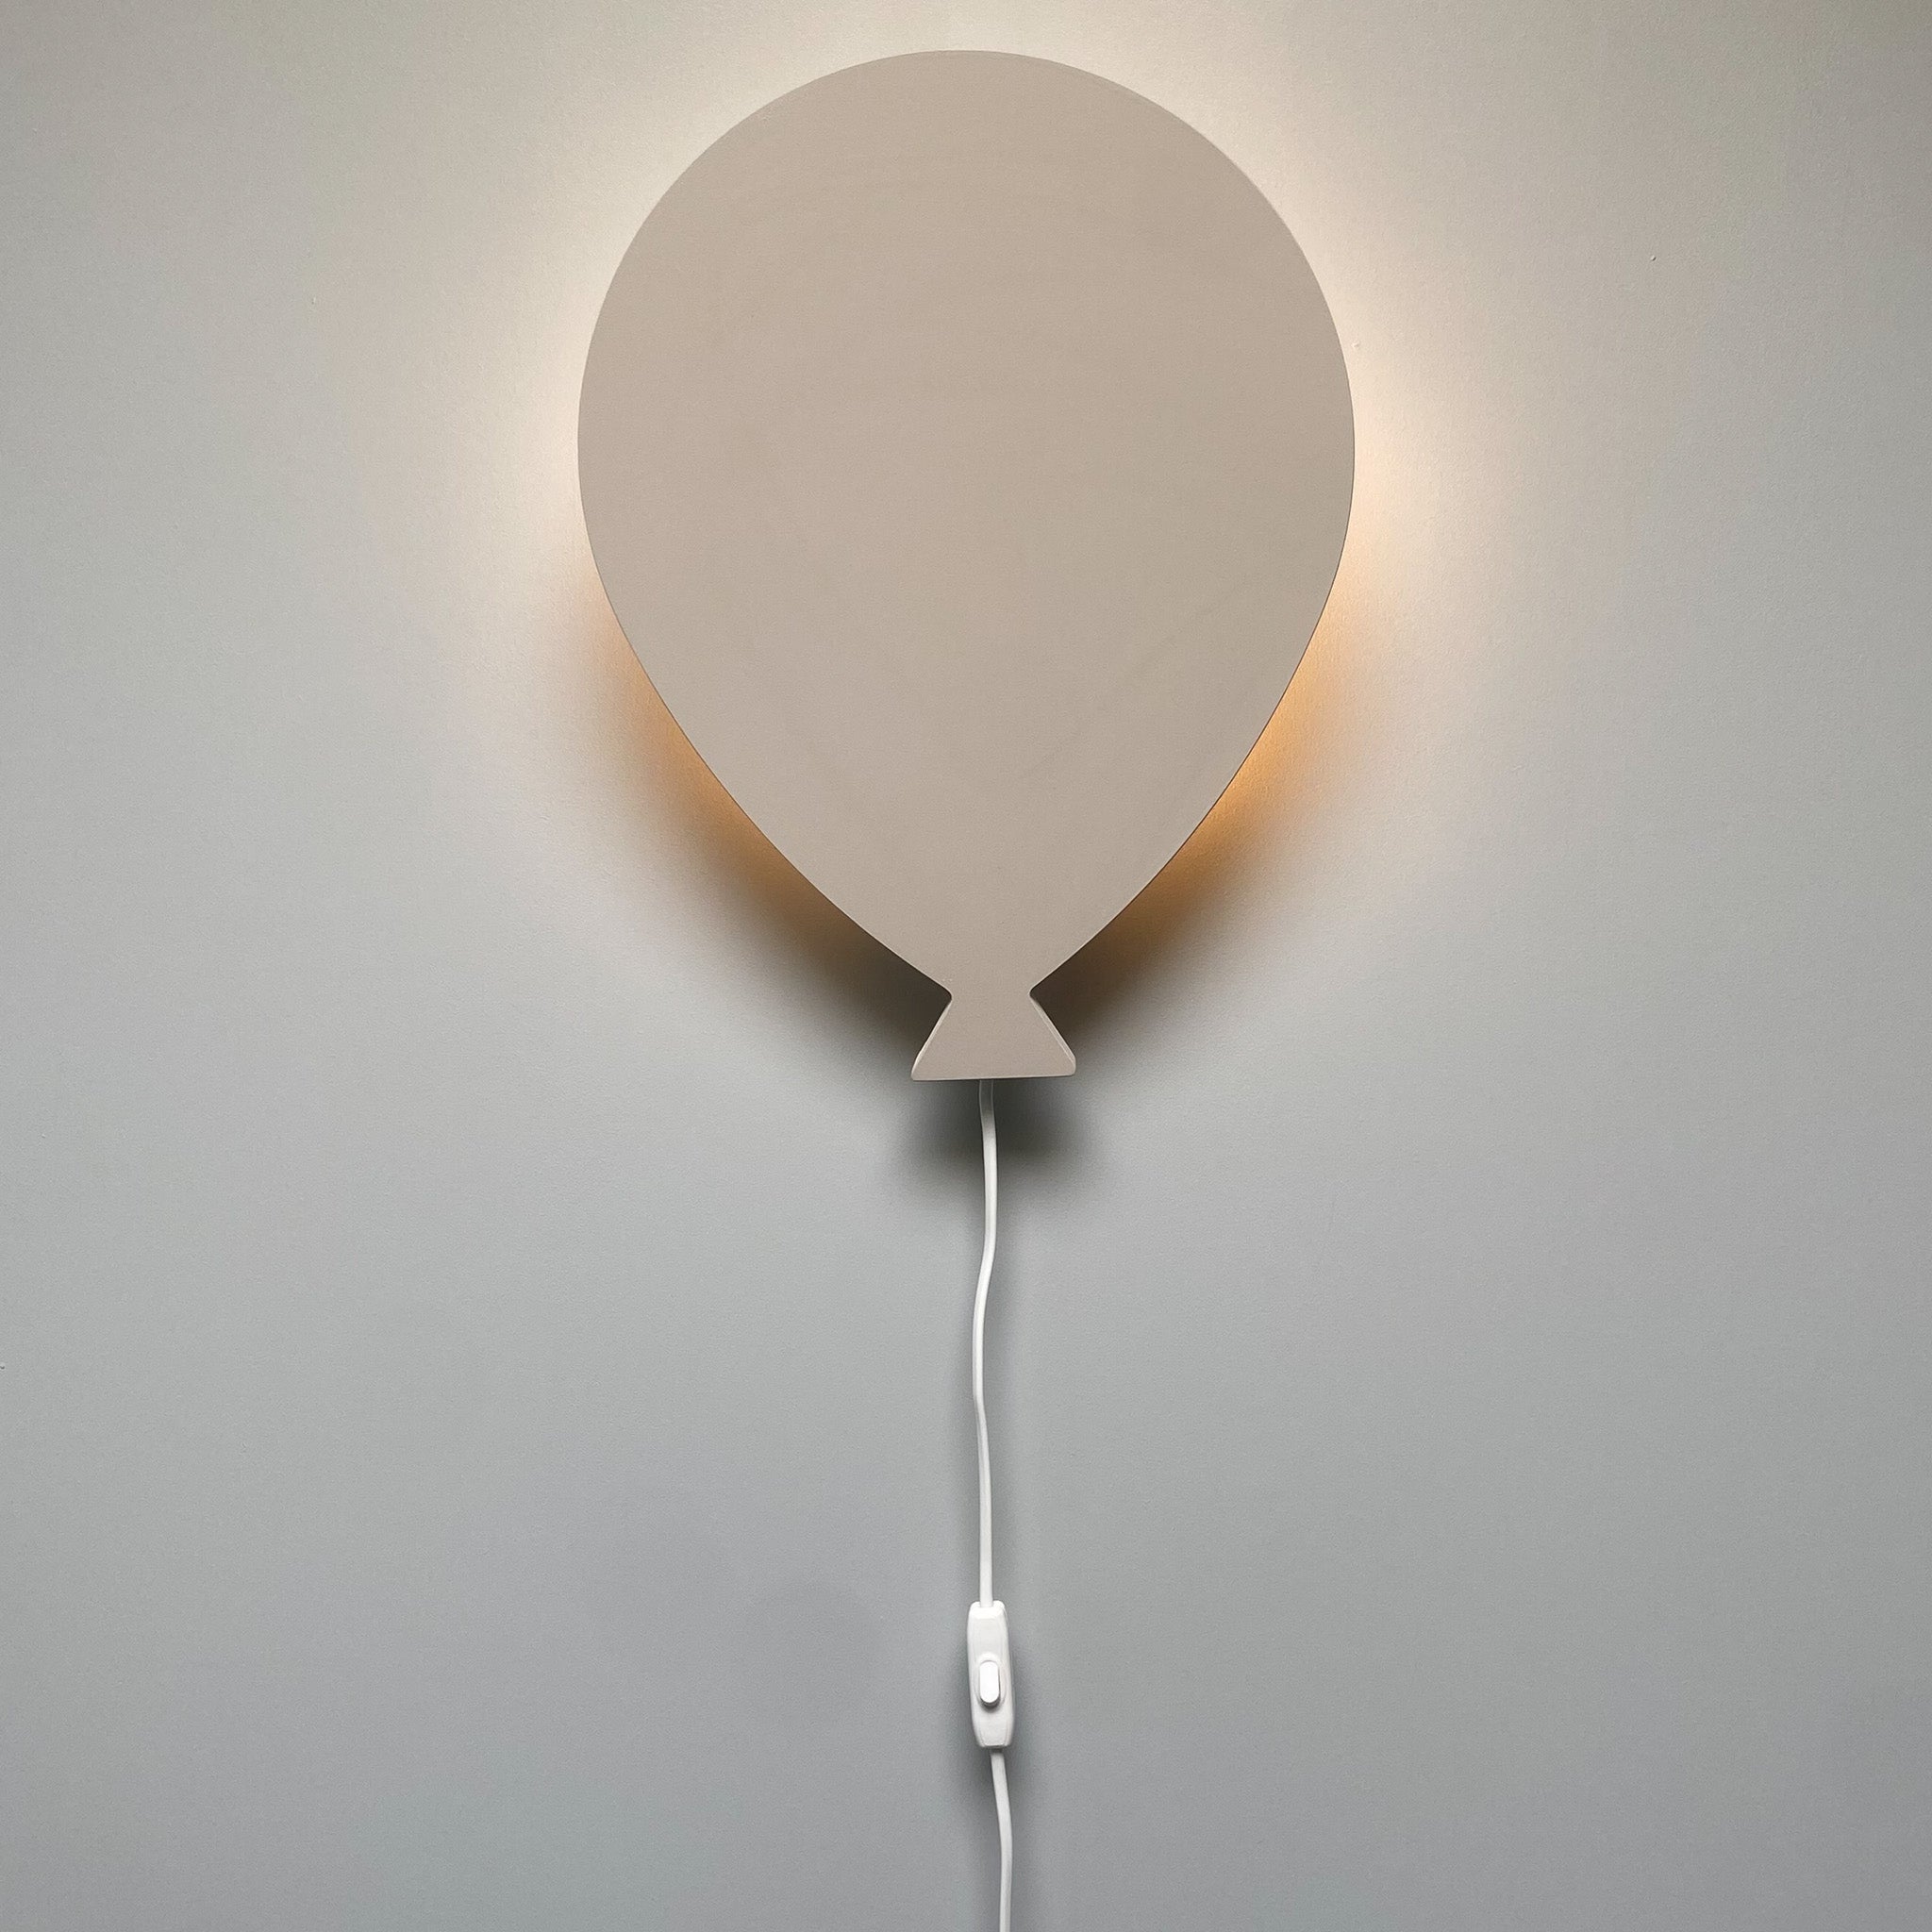 Houten wandlamp kinderkamer | Ballon - Beige - toddie.fr